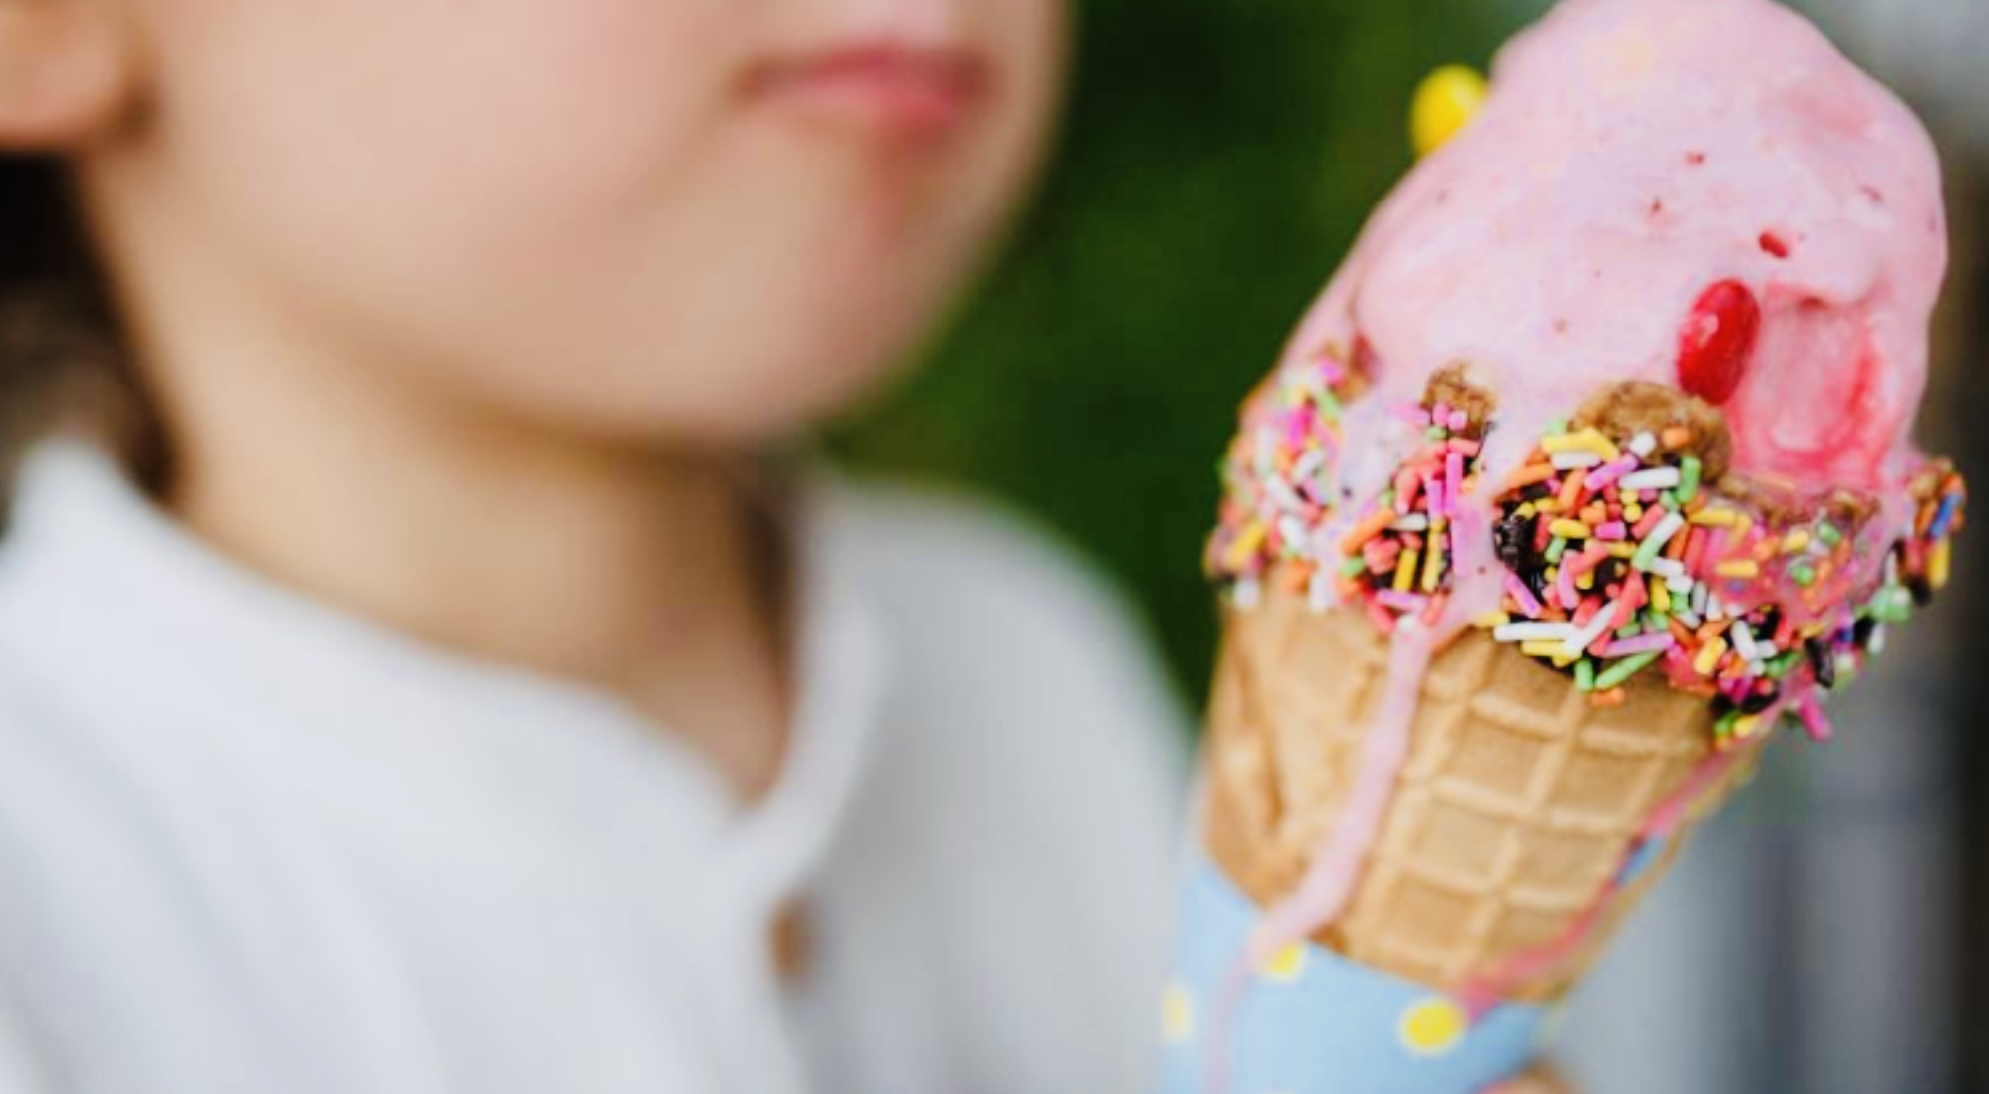 Ini 4 Manfaat Baik Mengkonsumsi Es Krim Bagi Anak-Anak, Jangan Dilarang Ya Bund!